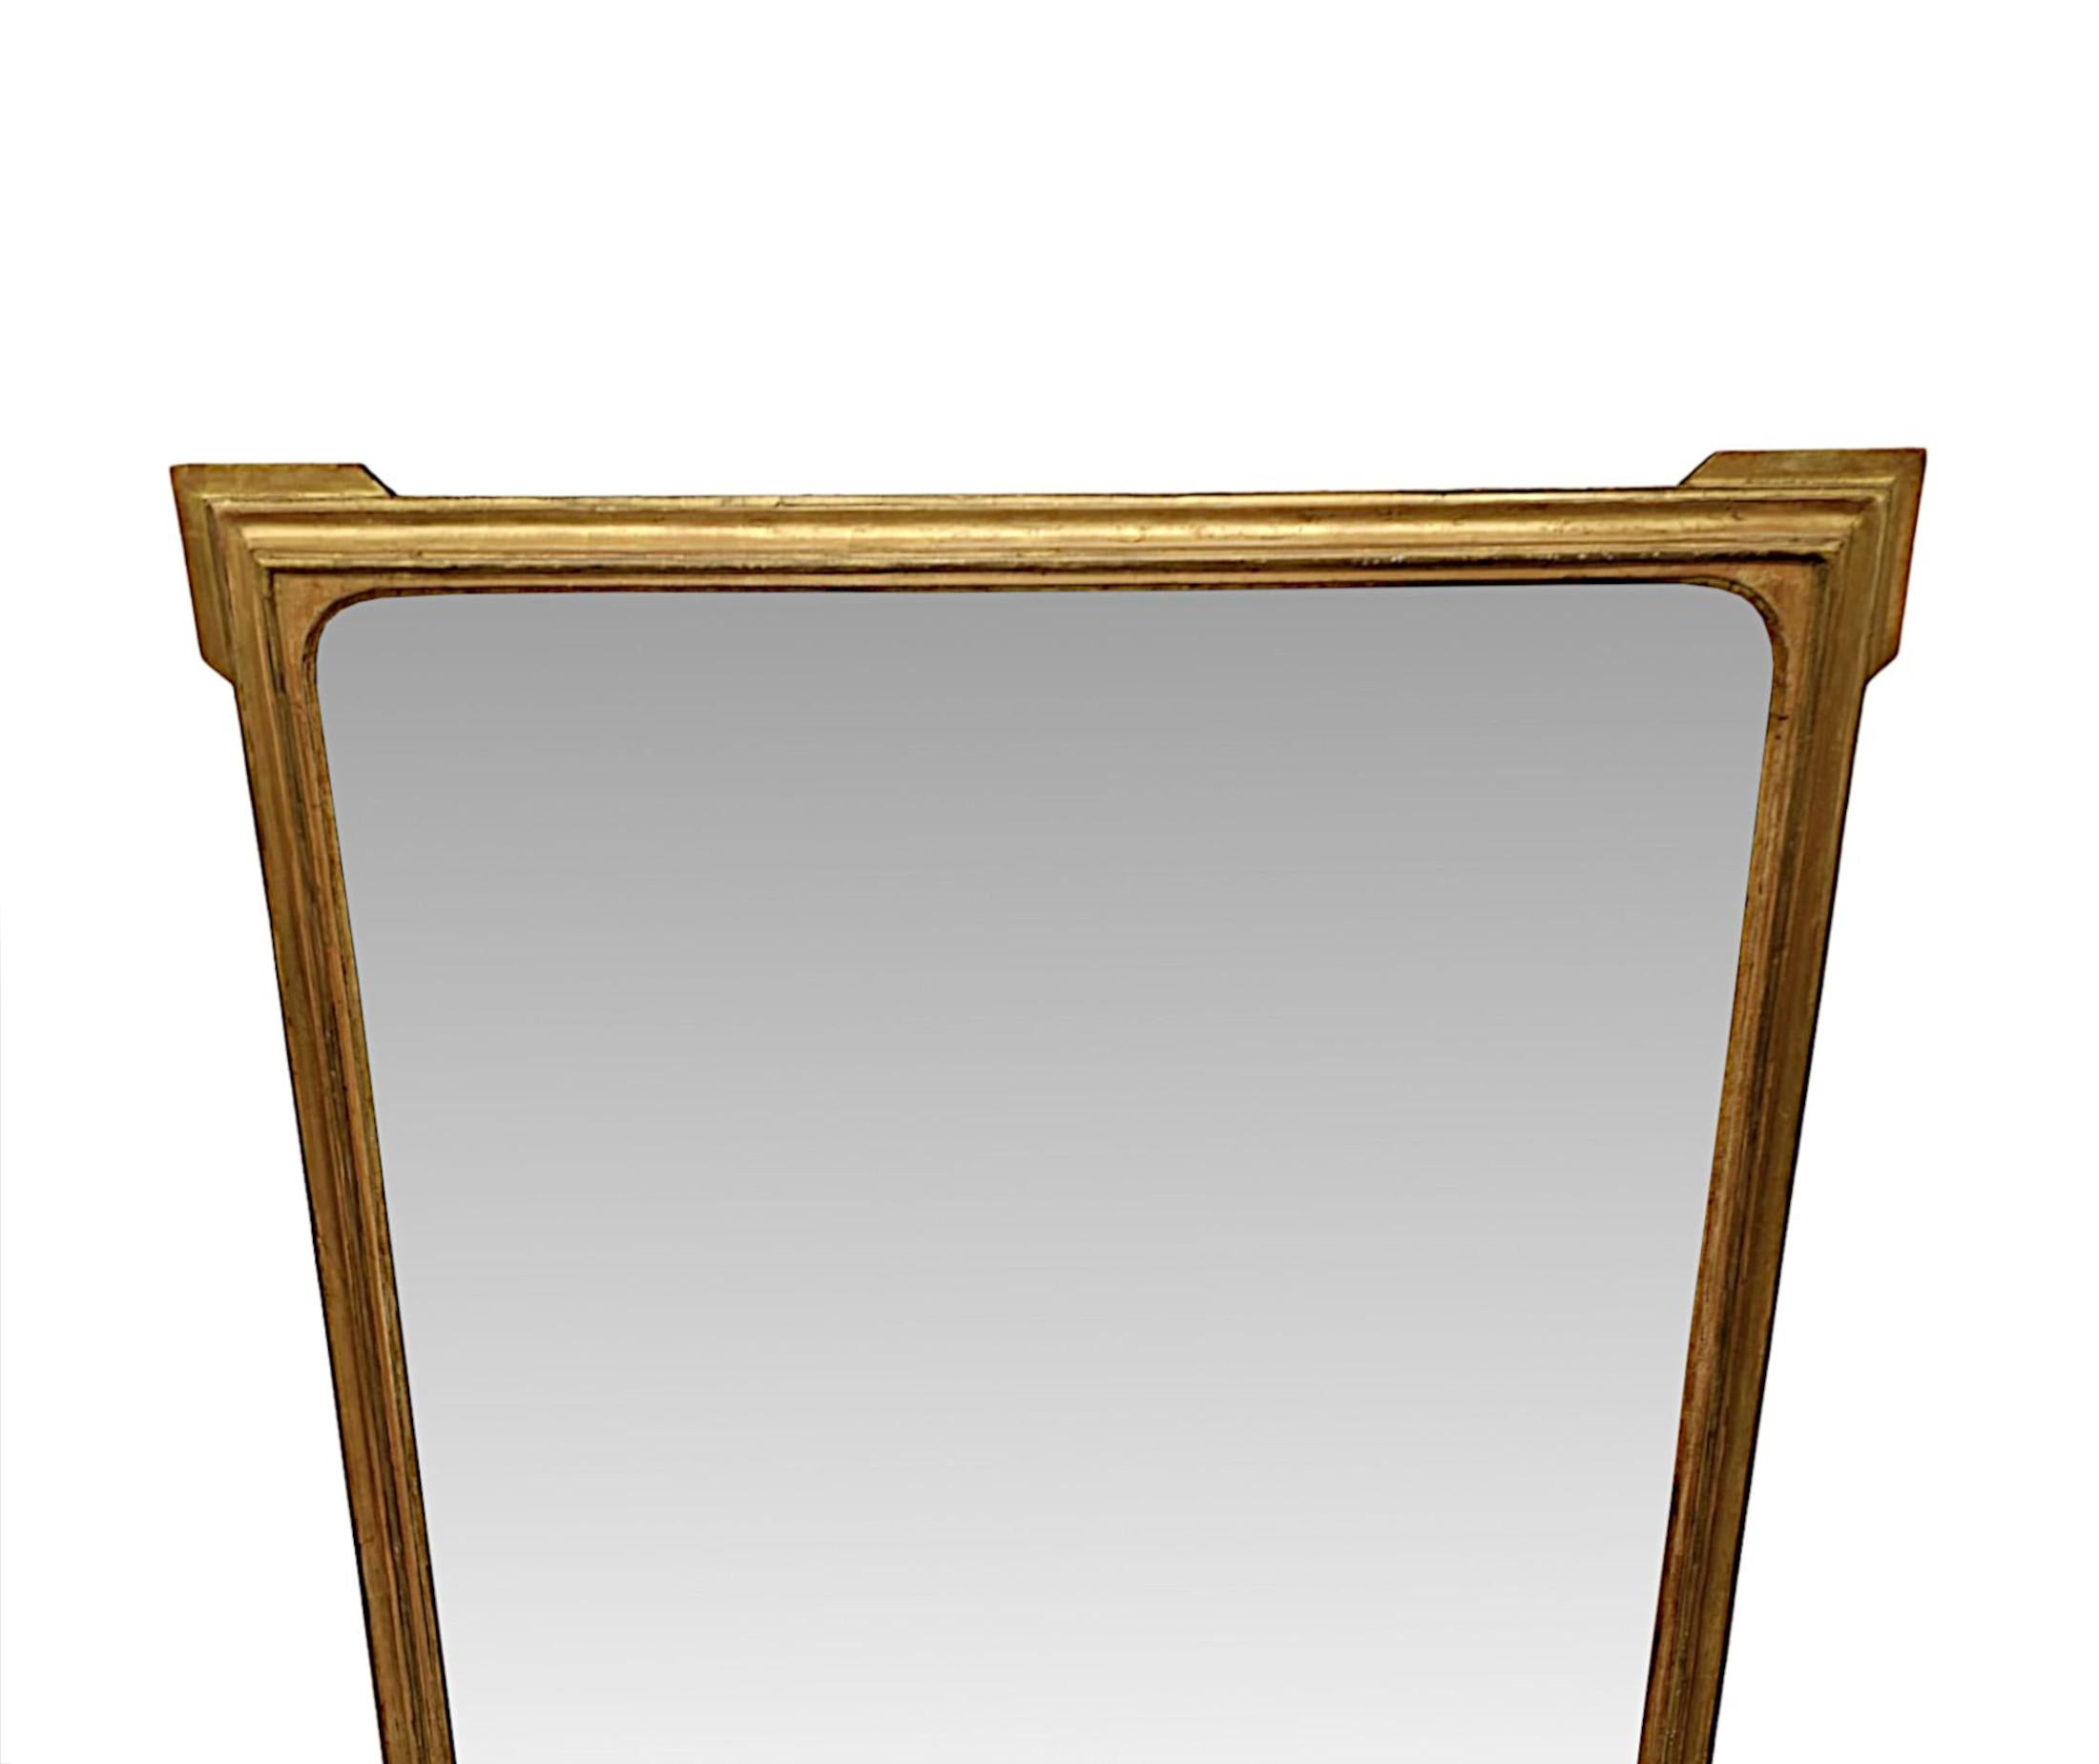 Eine fabelhafte 19. Jahrhundert Vergoldung overmantel Spiegel von außergewöhnlicher Qualität und großen Proportionen.  Die  Spiegel Glasplatte von rechteckiger Form ist in einem fein von Hand geschnitzt und schön einfach, geformt und kannelierte